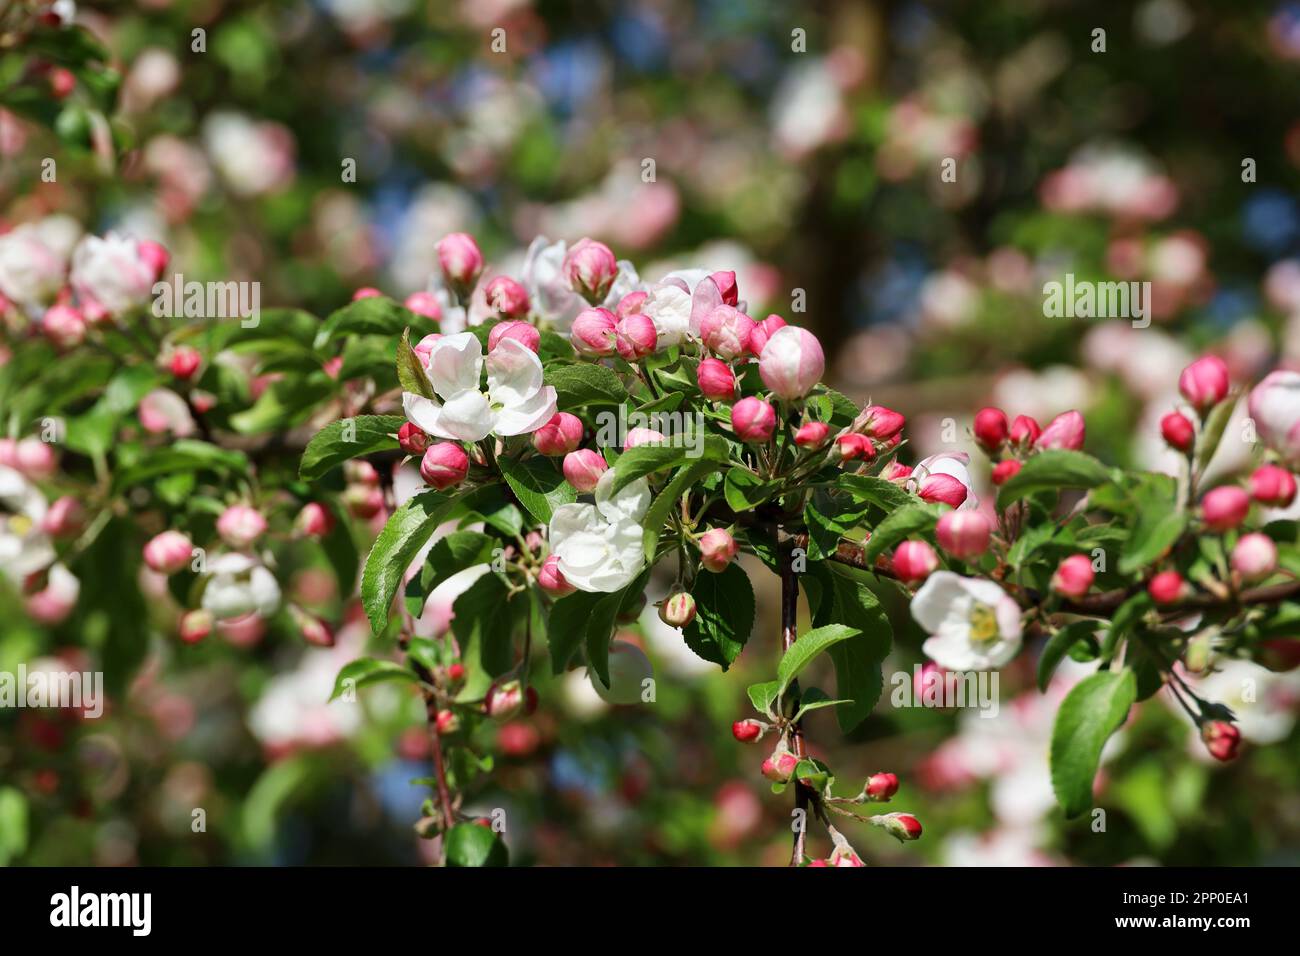 Apfelblüte an einem Zweig im Frühlingsgarten an sonnigen Tagen. Rosafarbene Knospen und Blüten mit grünen Blättern Stockfoto